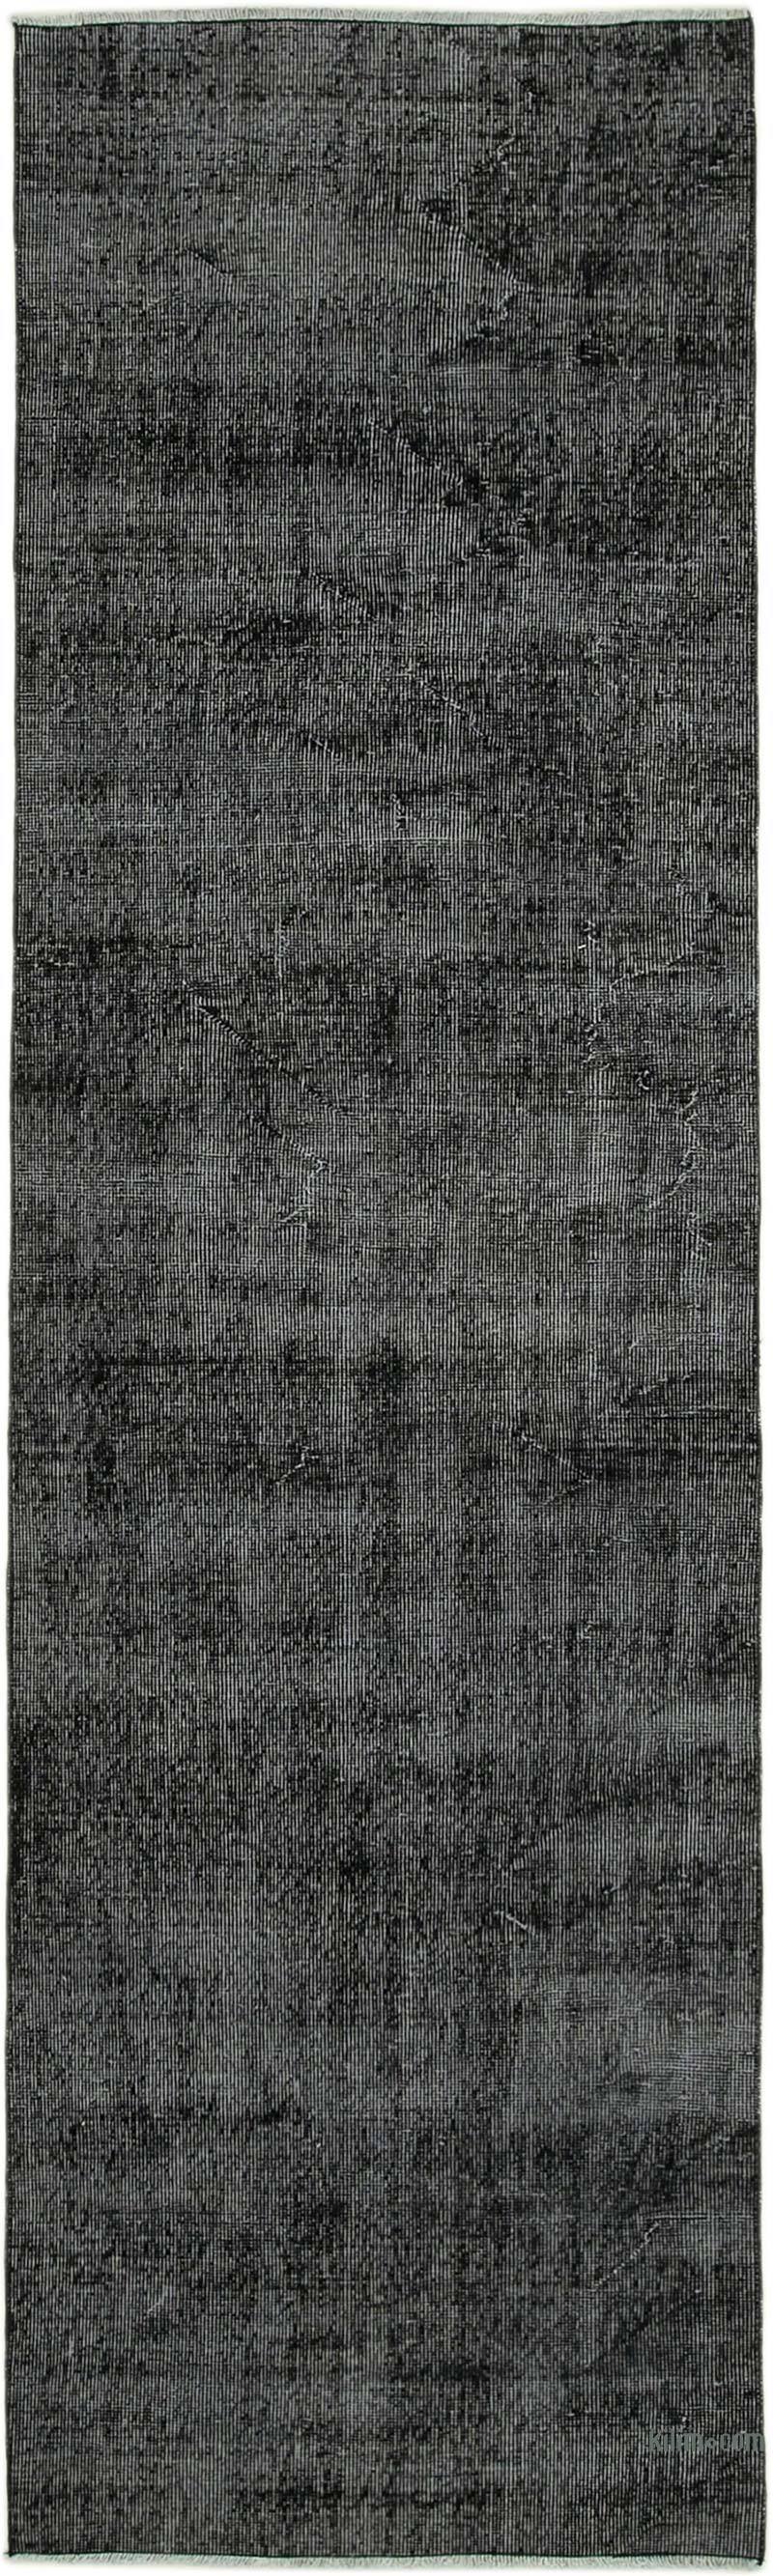 Siyah Boyalı El Dokuma Vintage Halı Yolluk - 90 cm x 305 cm - K0052195